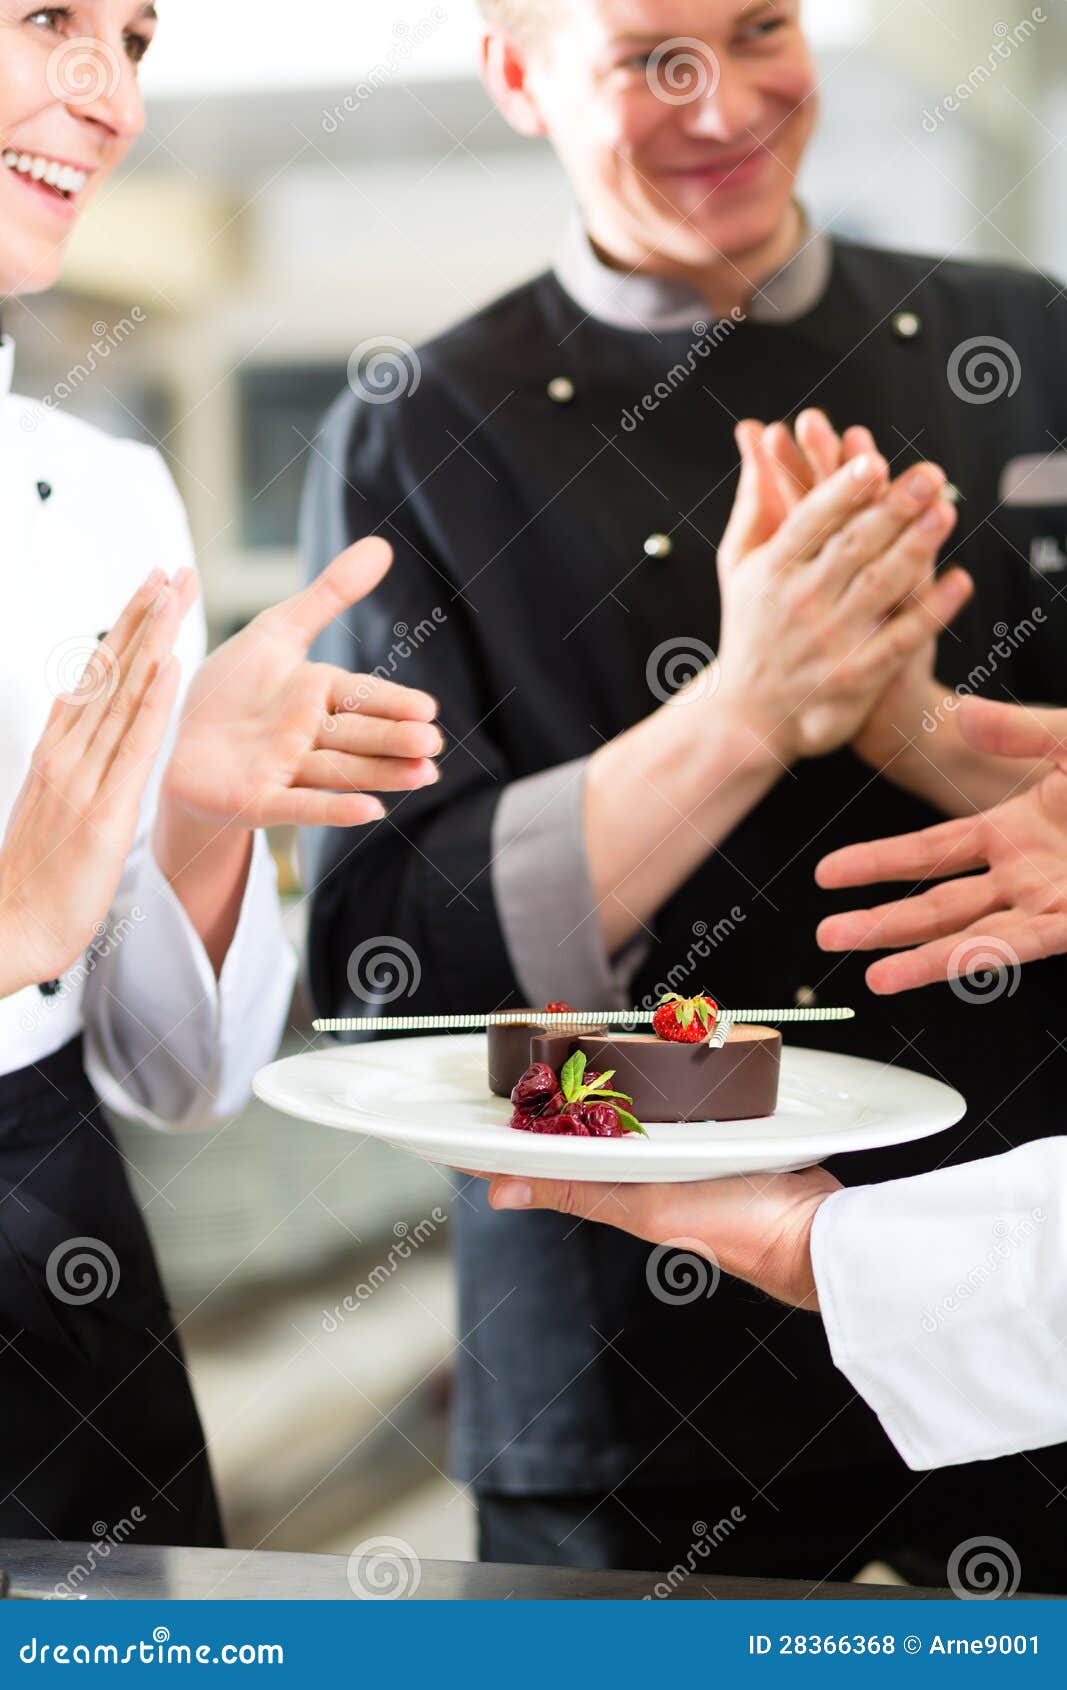 chef team in restaurant kitchen with dessert